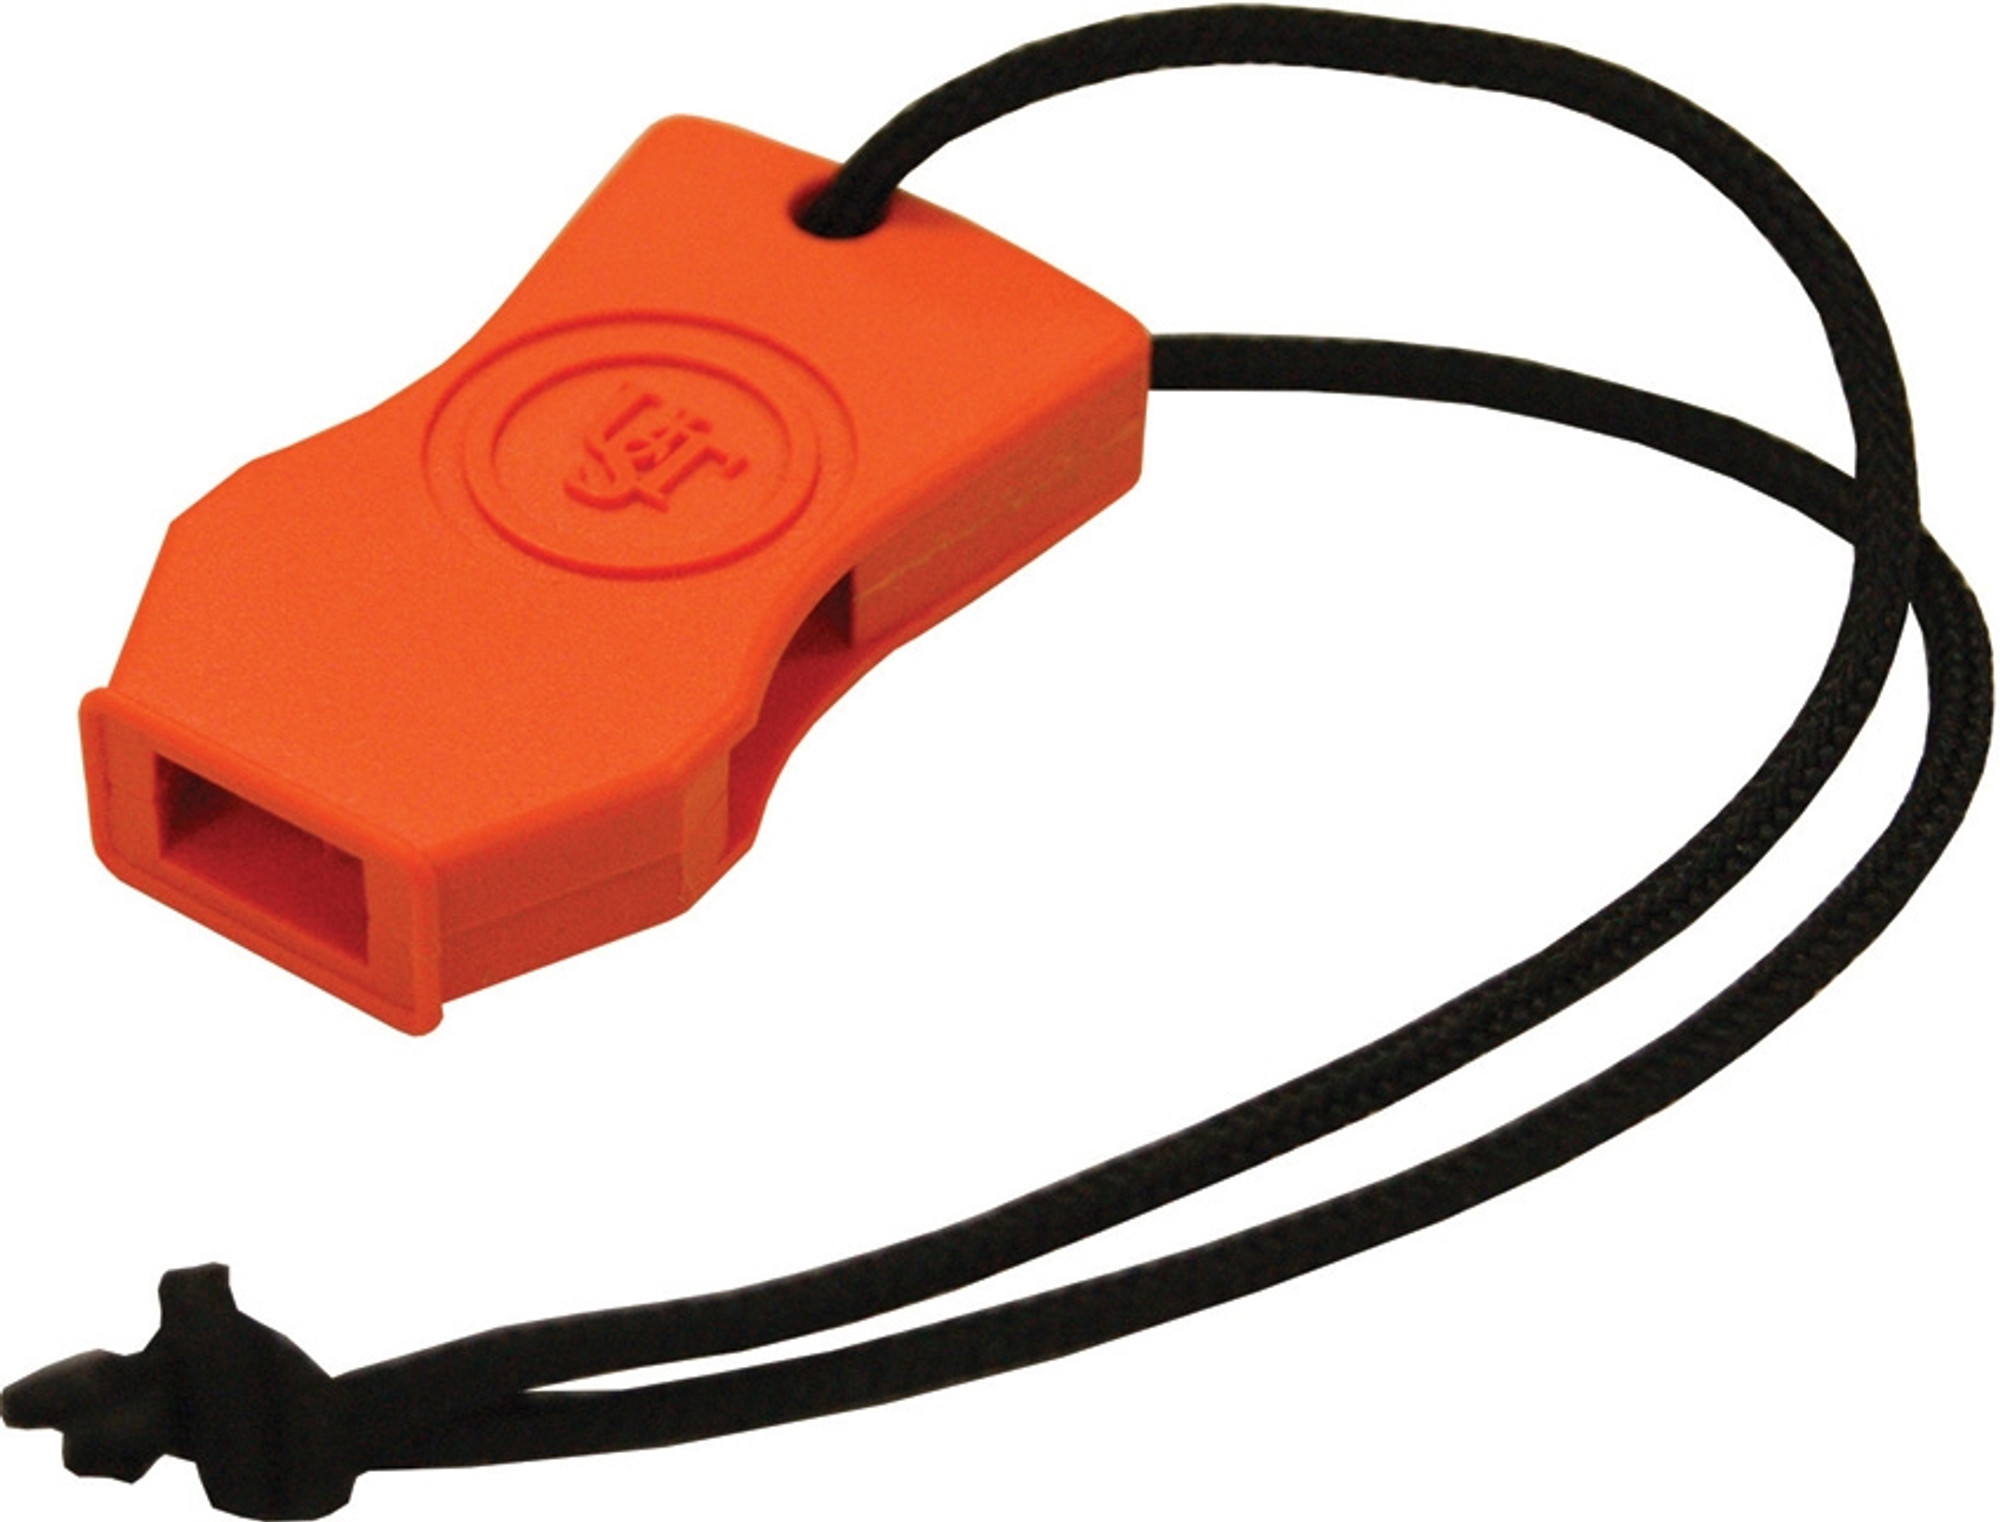 UST Jetscream Micro Whistle Orange